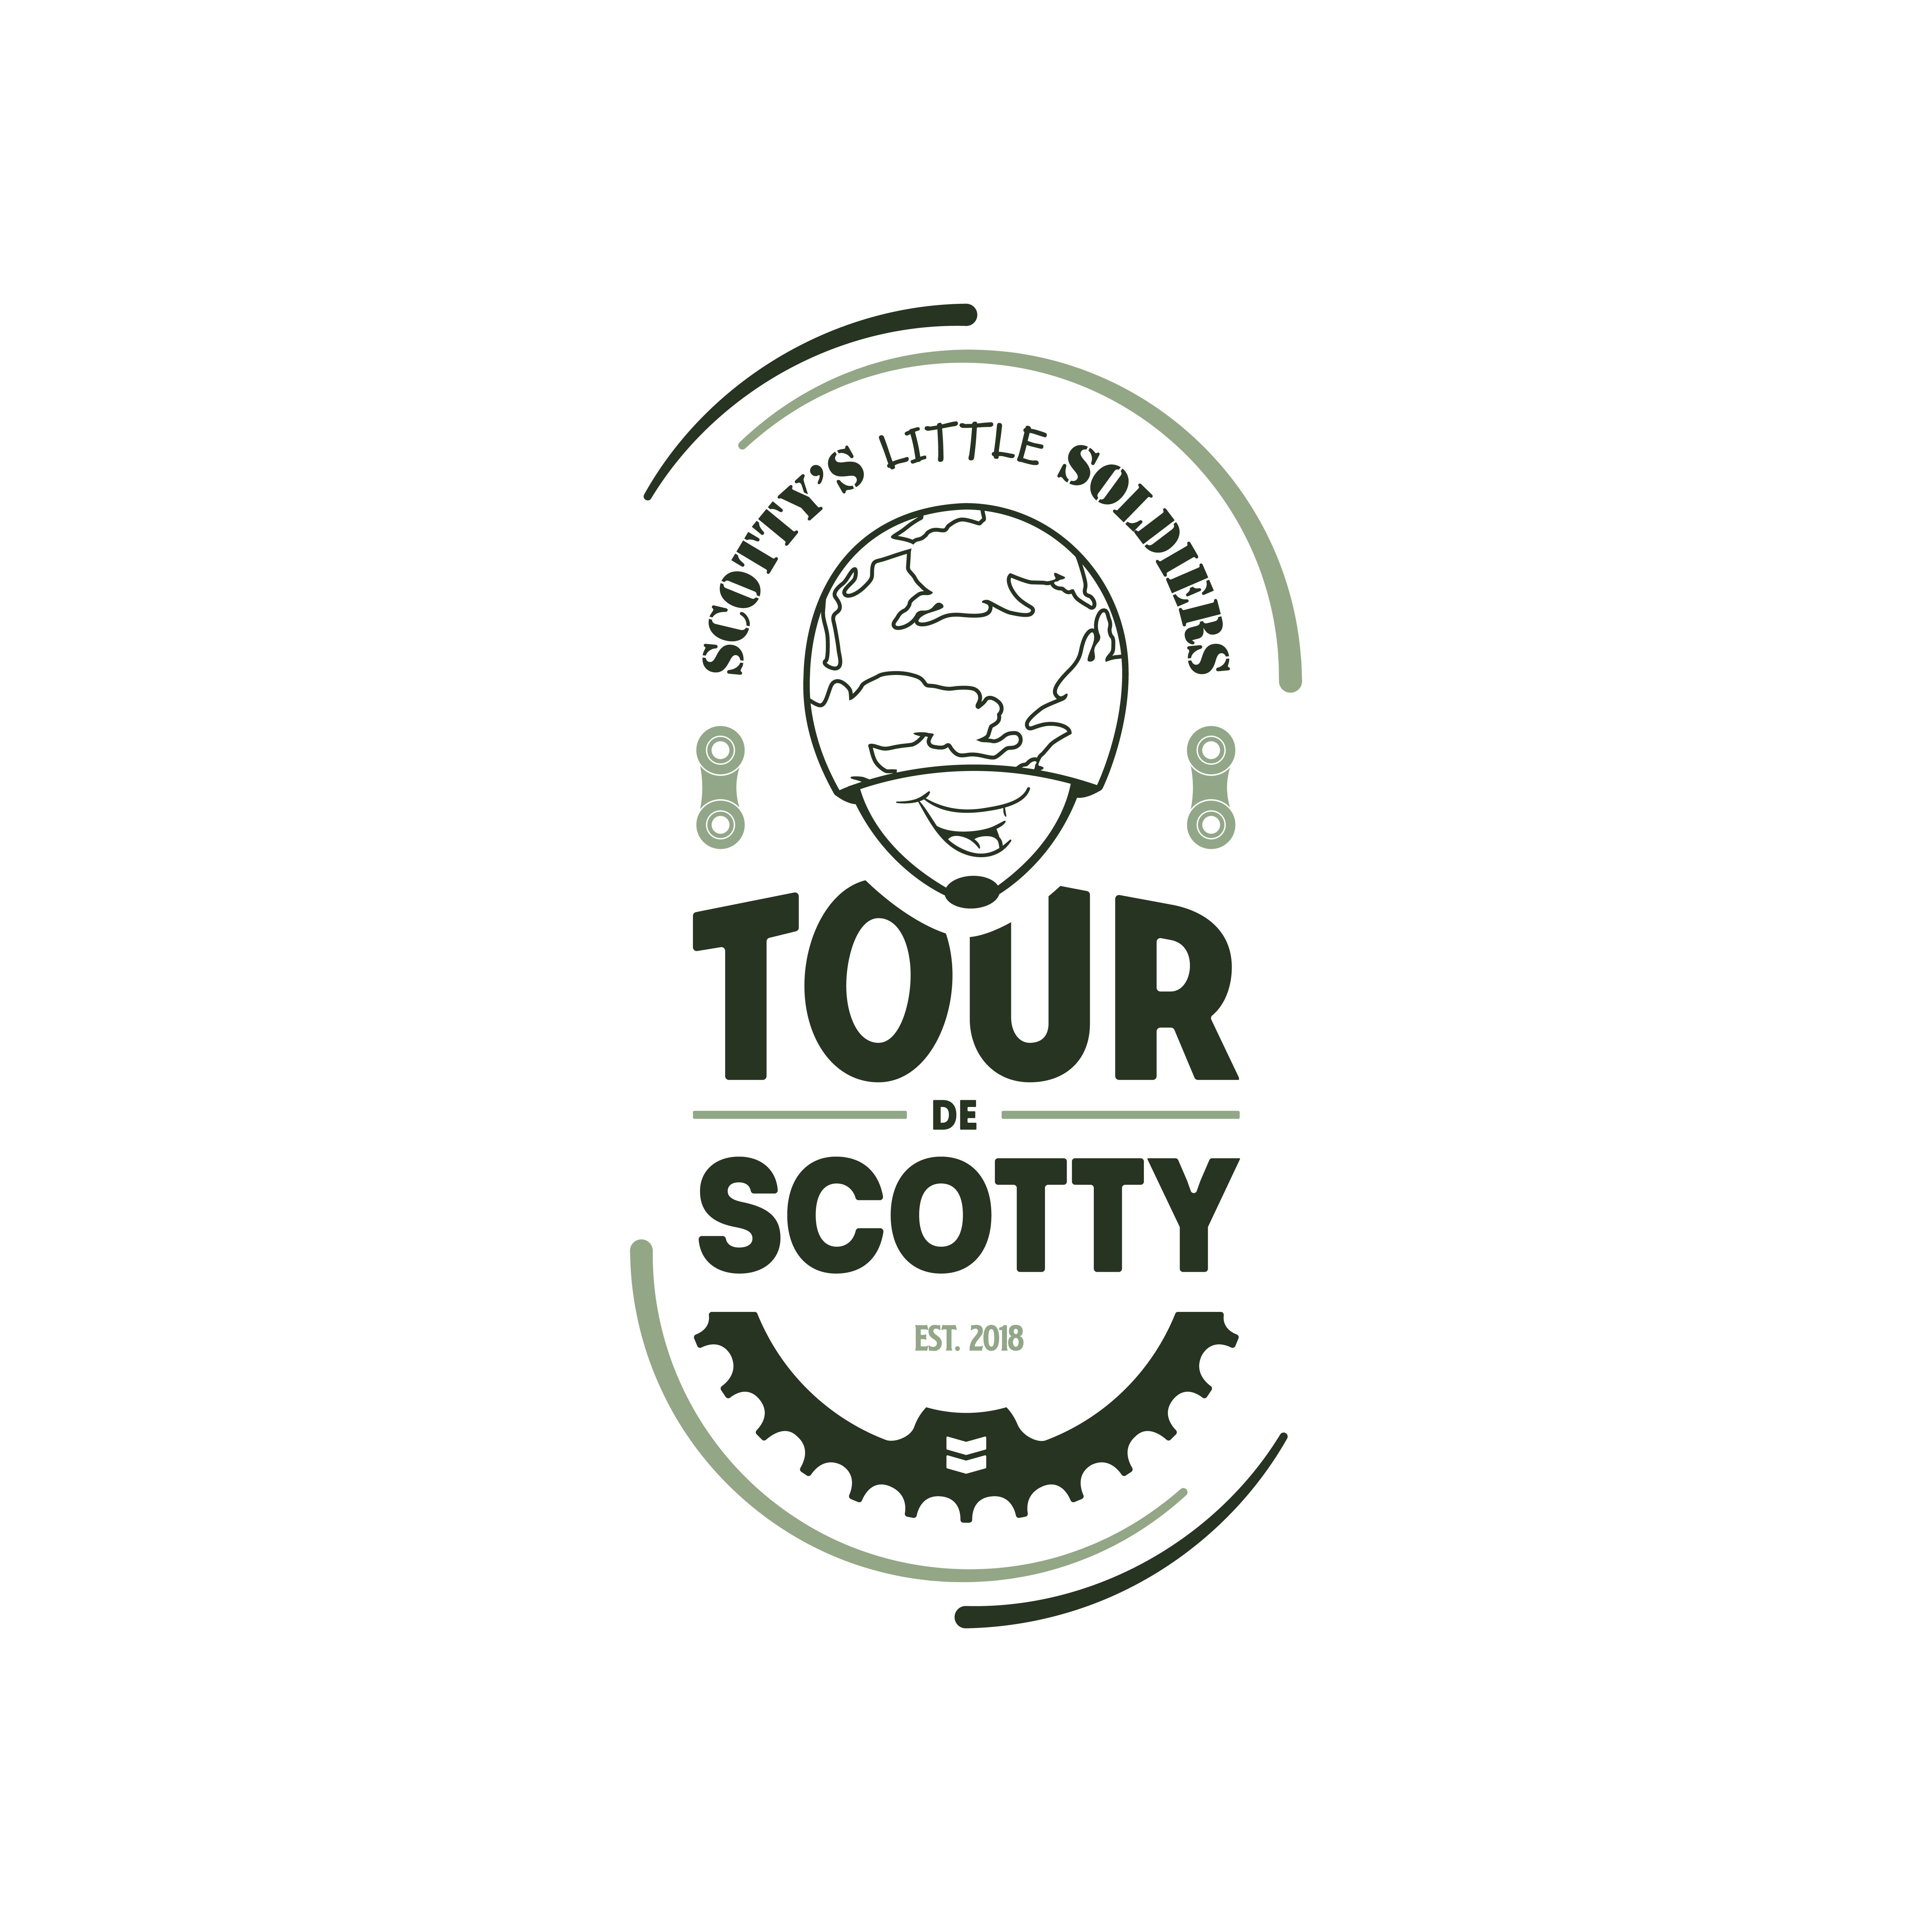 Tour de Scotty logo